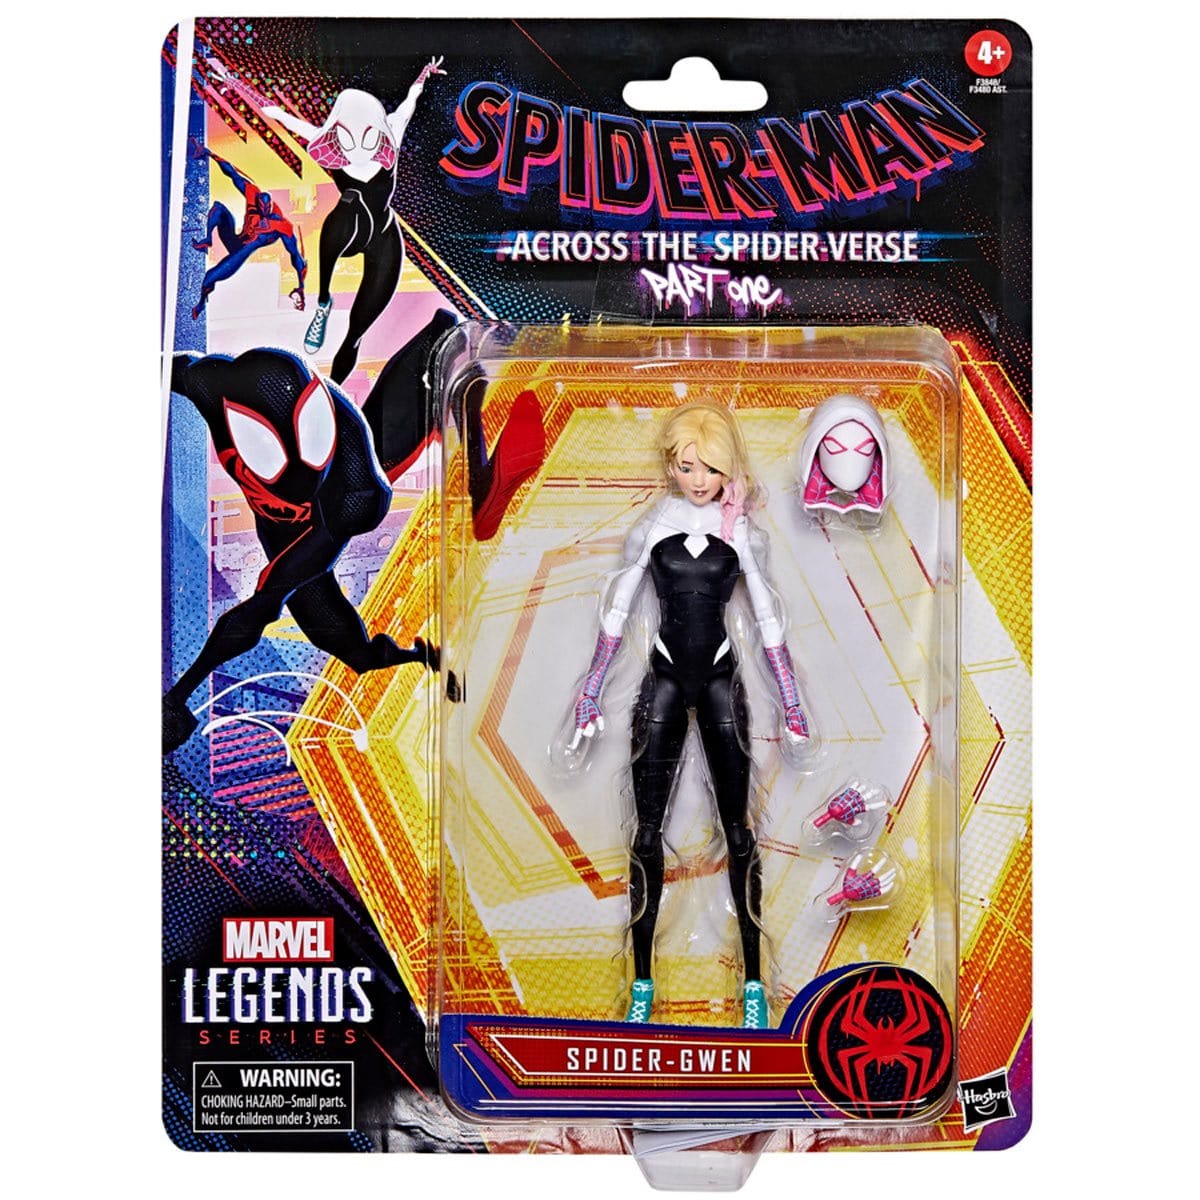 Marvel Legends 6" Figures - Spider-Man: Across The Spider-Verse - Spider-Gwen 